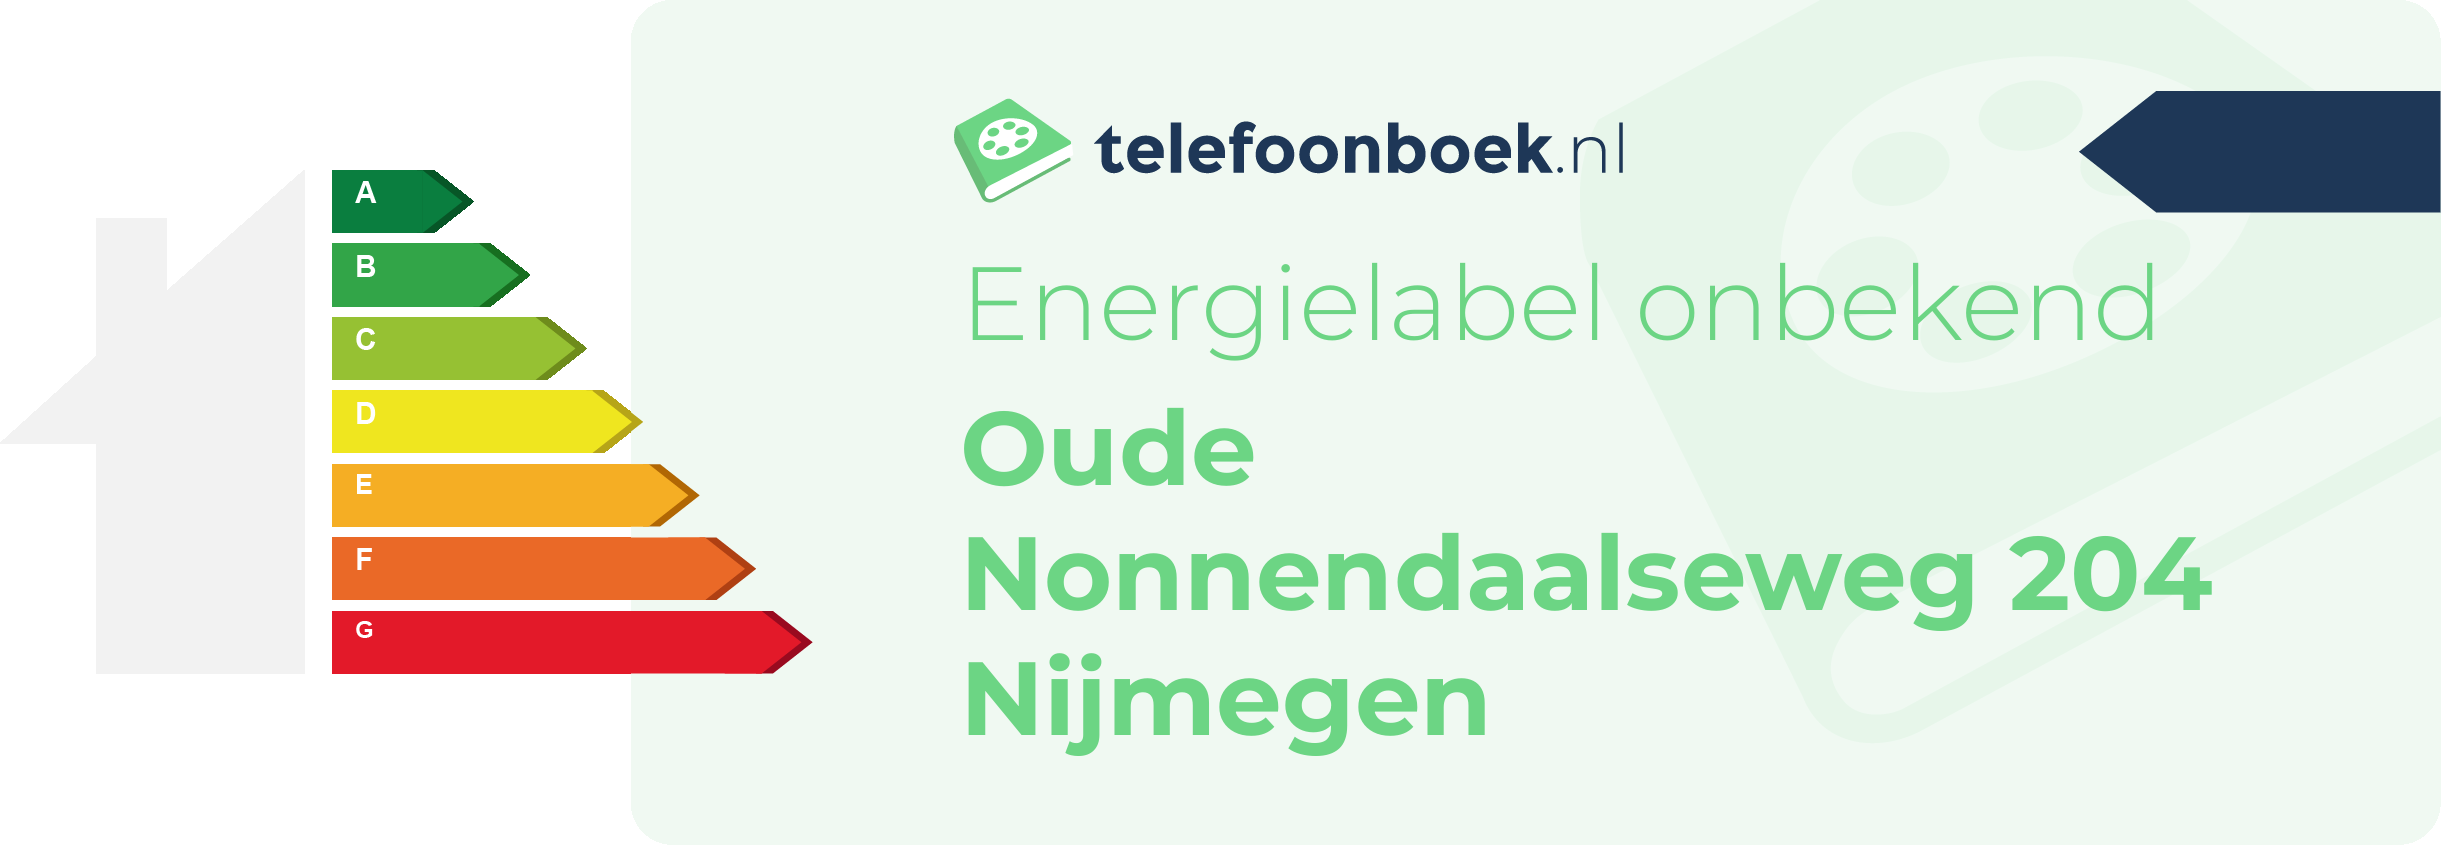 Energielabel Oude Nonnendaalseweg 204 Nijmegen